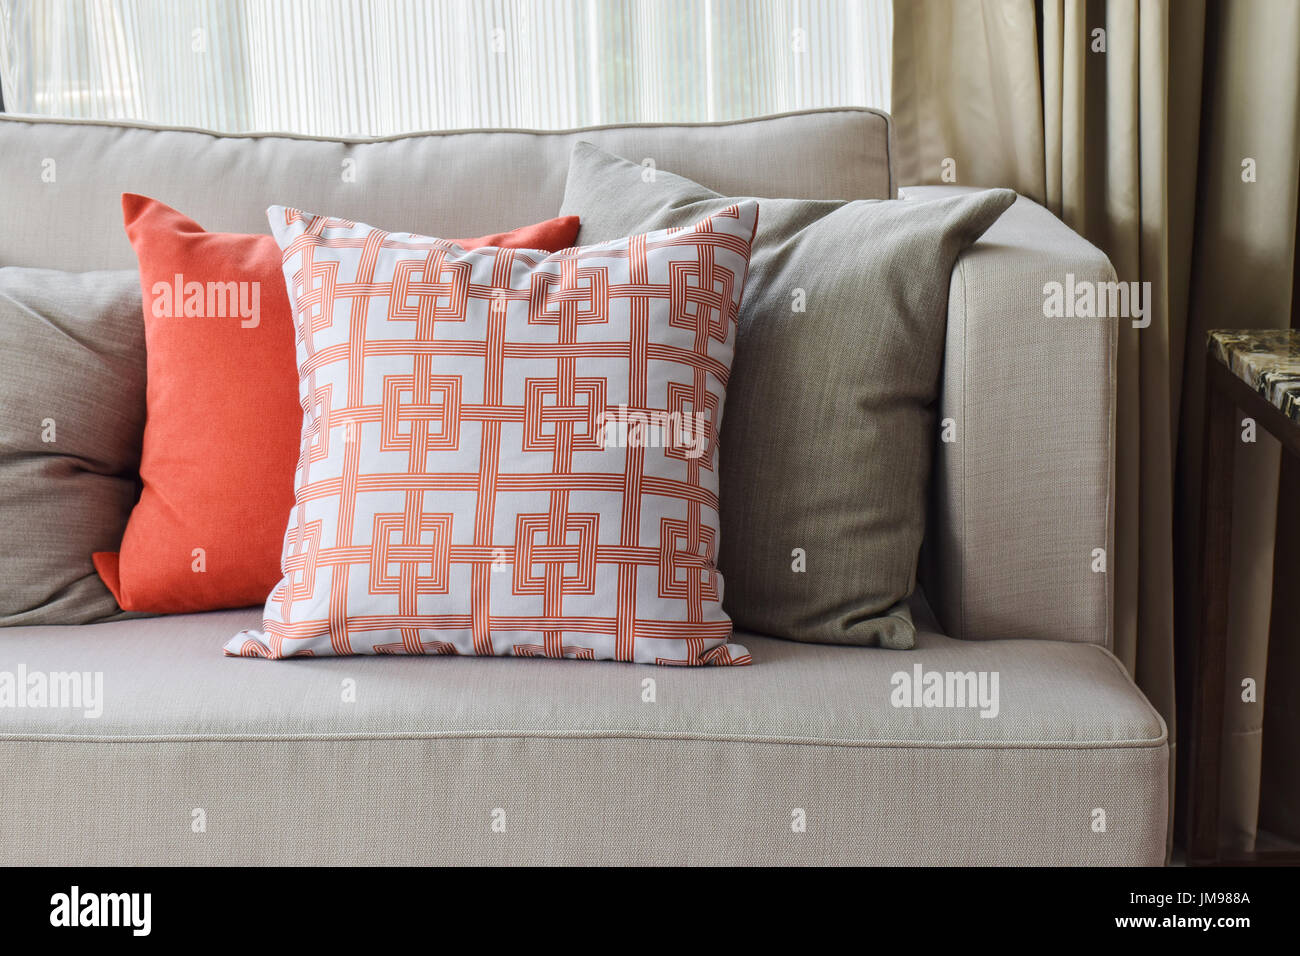 Chinesische Muster in orange und tief orange und grau Kissen auf leichten  grauen Sofa-set Stockfotografie - Alamy